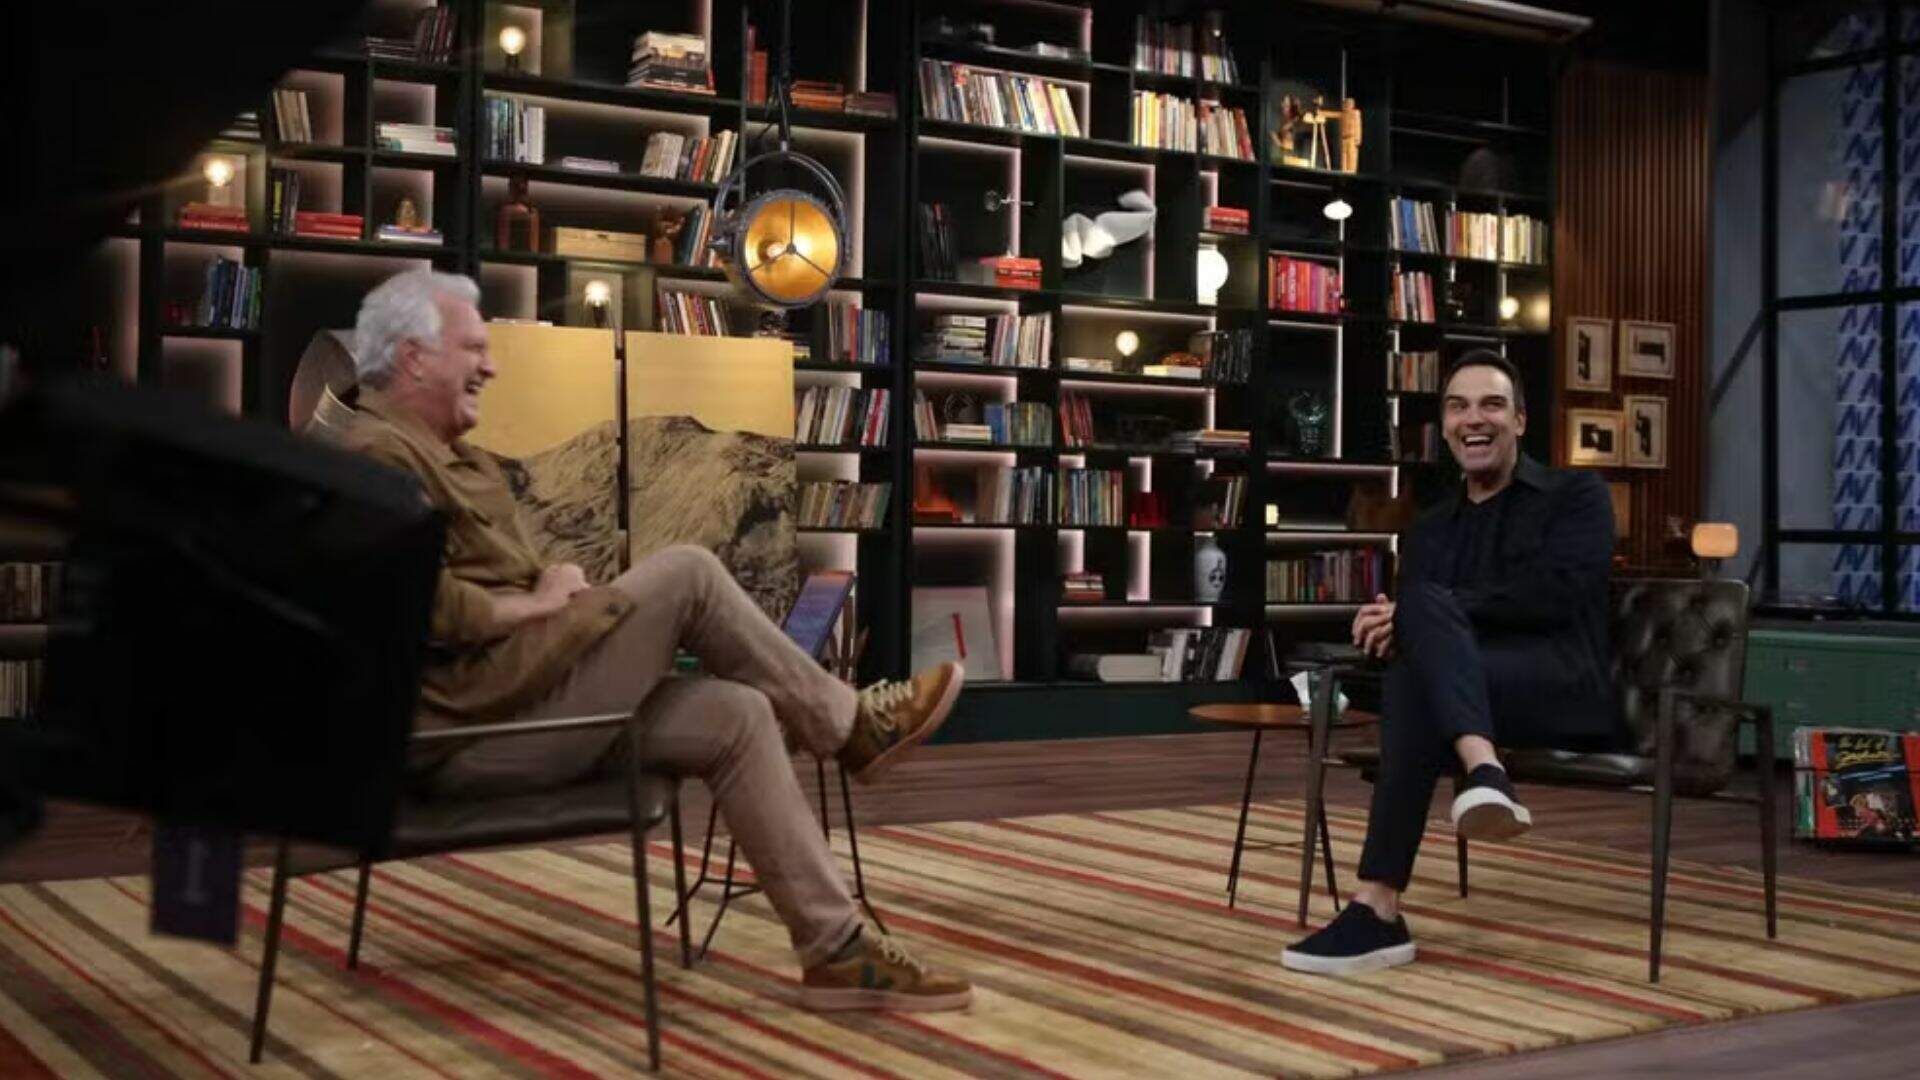 Emocionante! Pedro Bial entrevista Tadeu Schmidt no ‘Conversa’ com ex-BBBs na plateia - Metropolitana FM